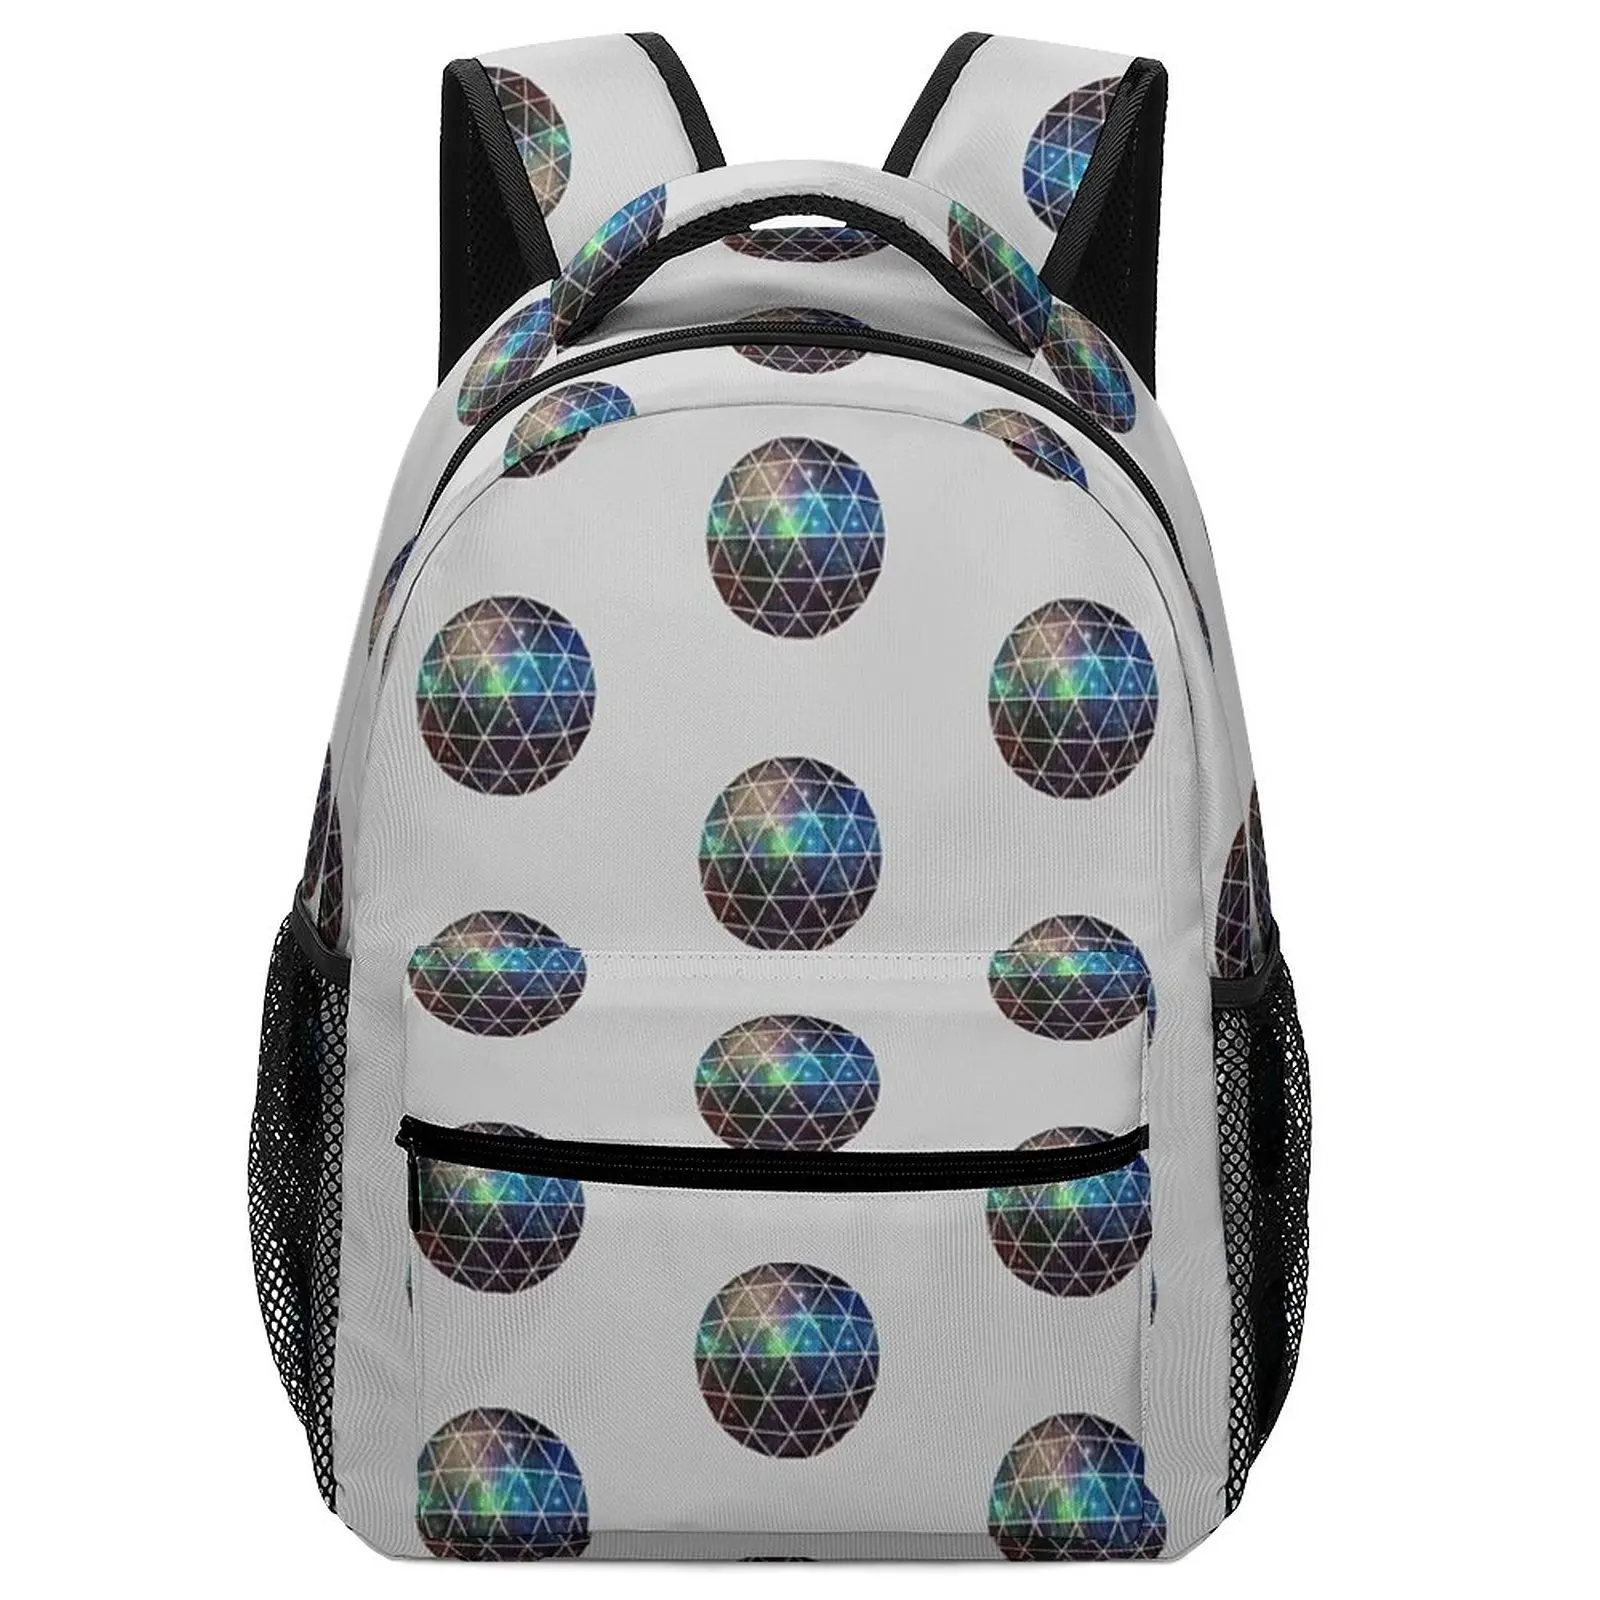 Cute Art Geodesic IV Baby Backpack Nursery for Girls Boys Men Women School Bag Elementary School Backpack For Boys